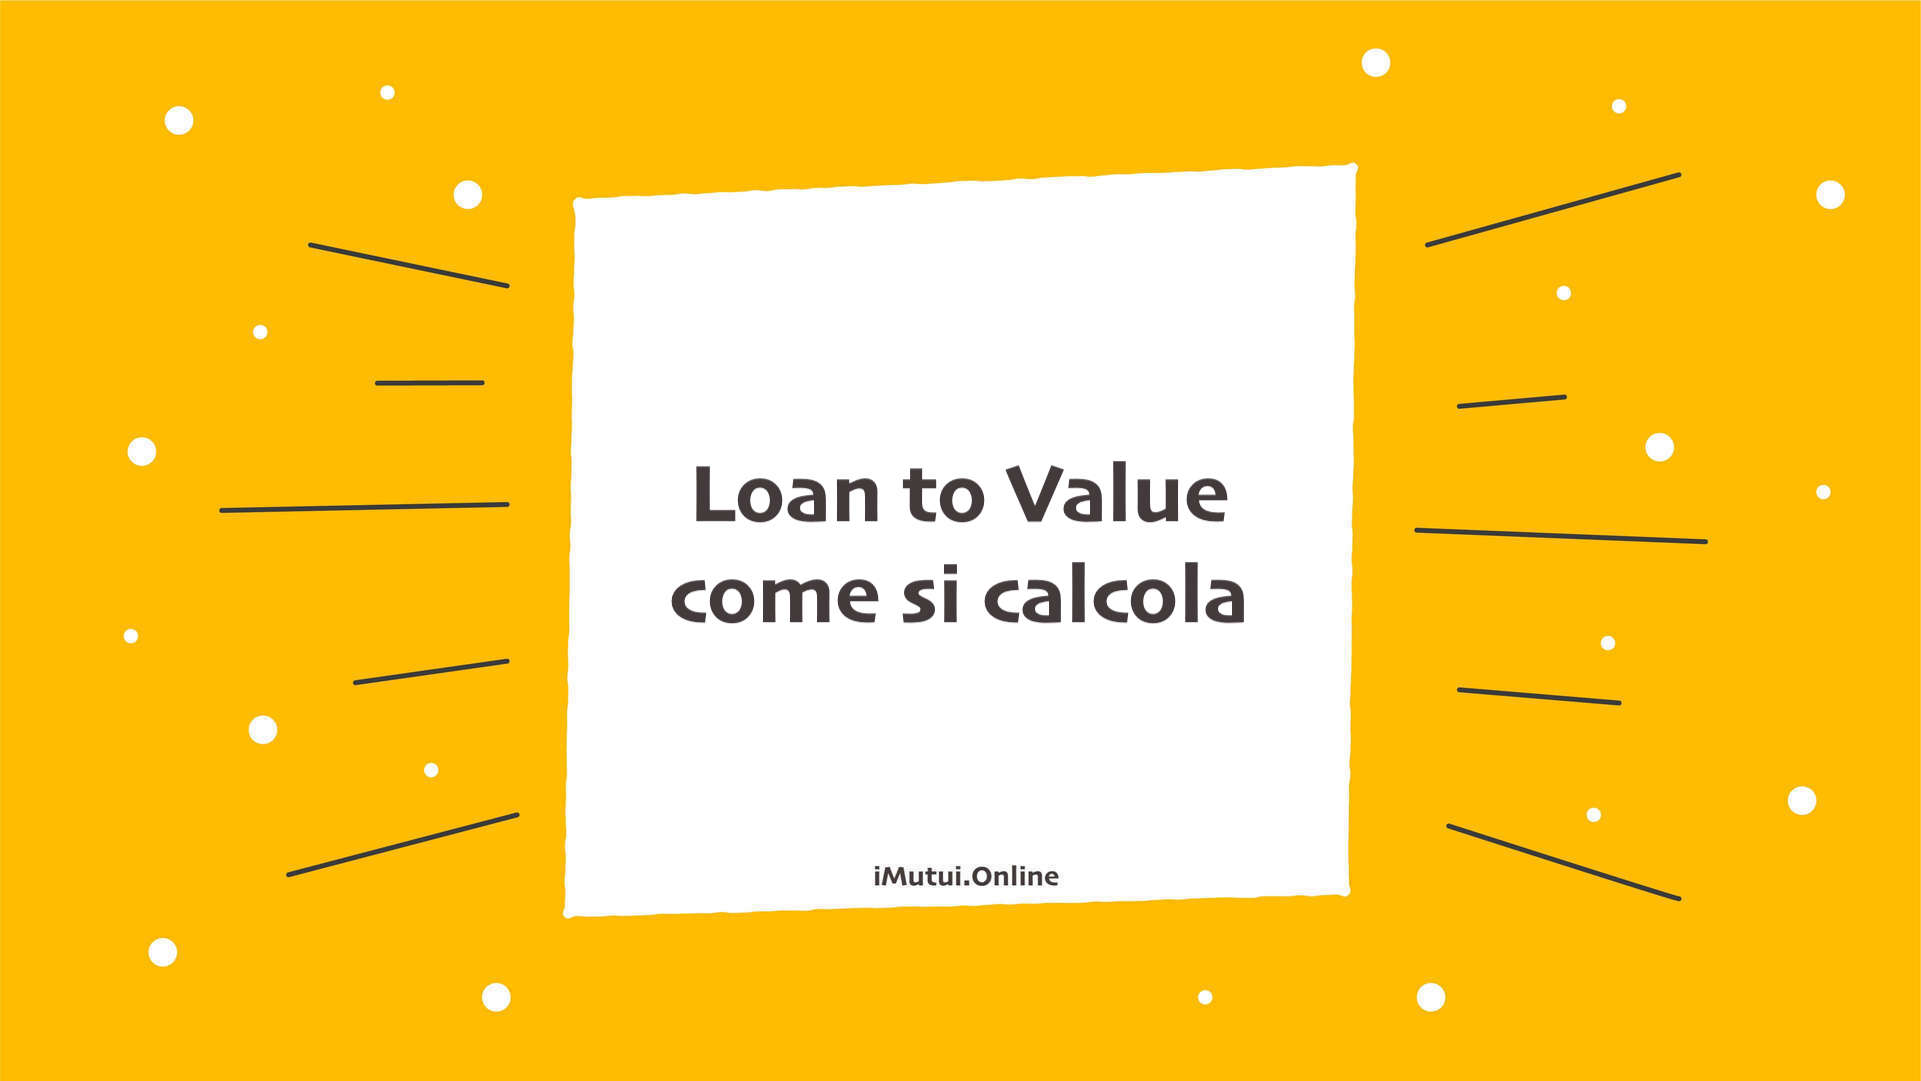 Loan to Value come si calcola